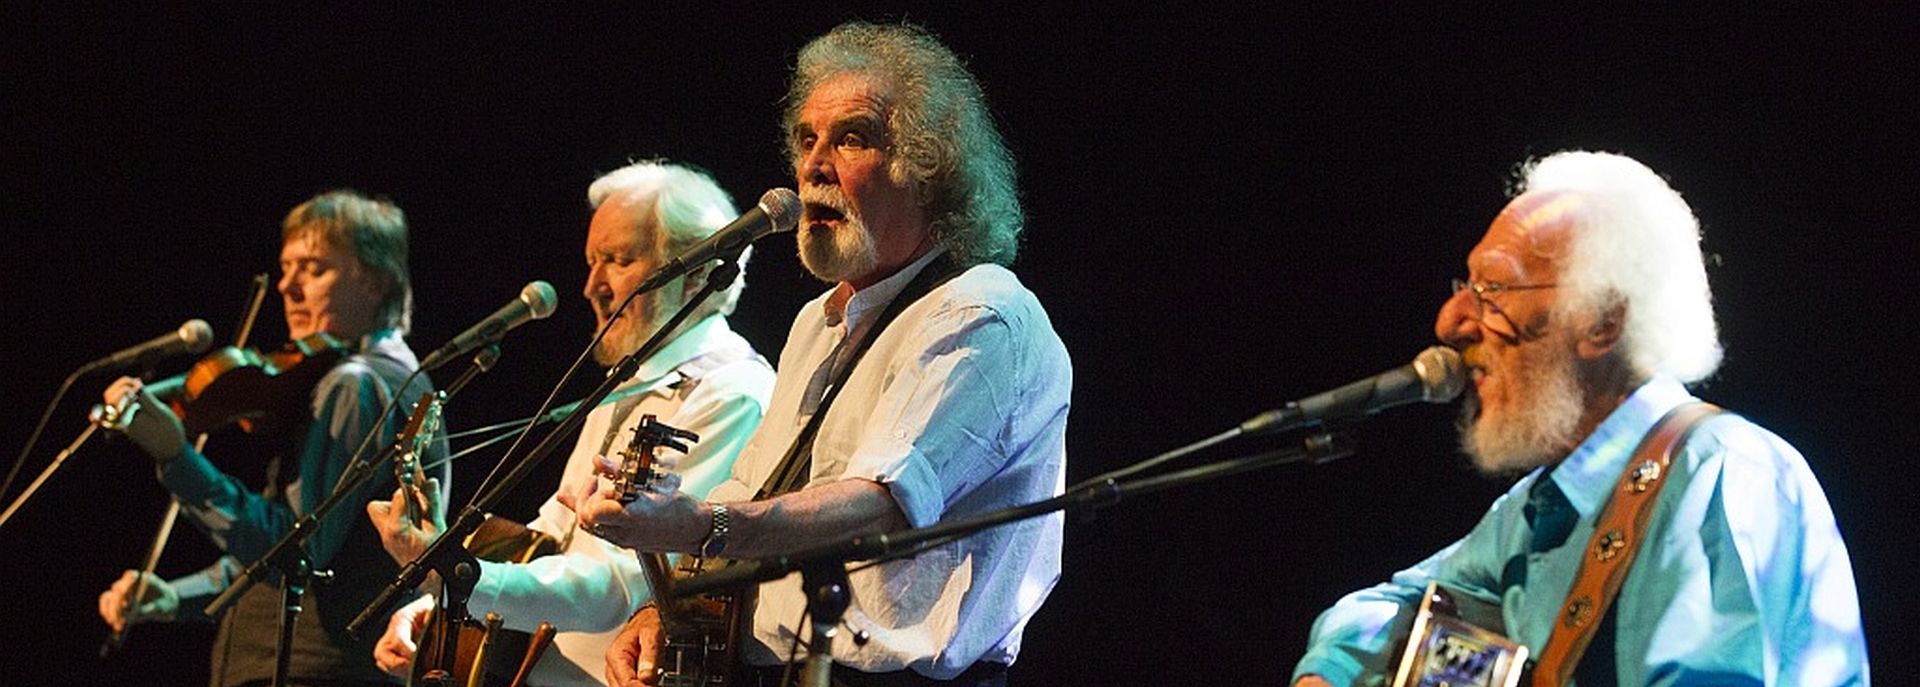 The Dublin Legends, formerly known as the Dubliners speelden op het Irish Folk Festival in De Tamboer.